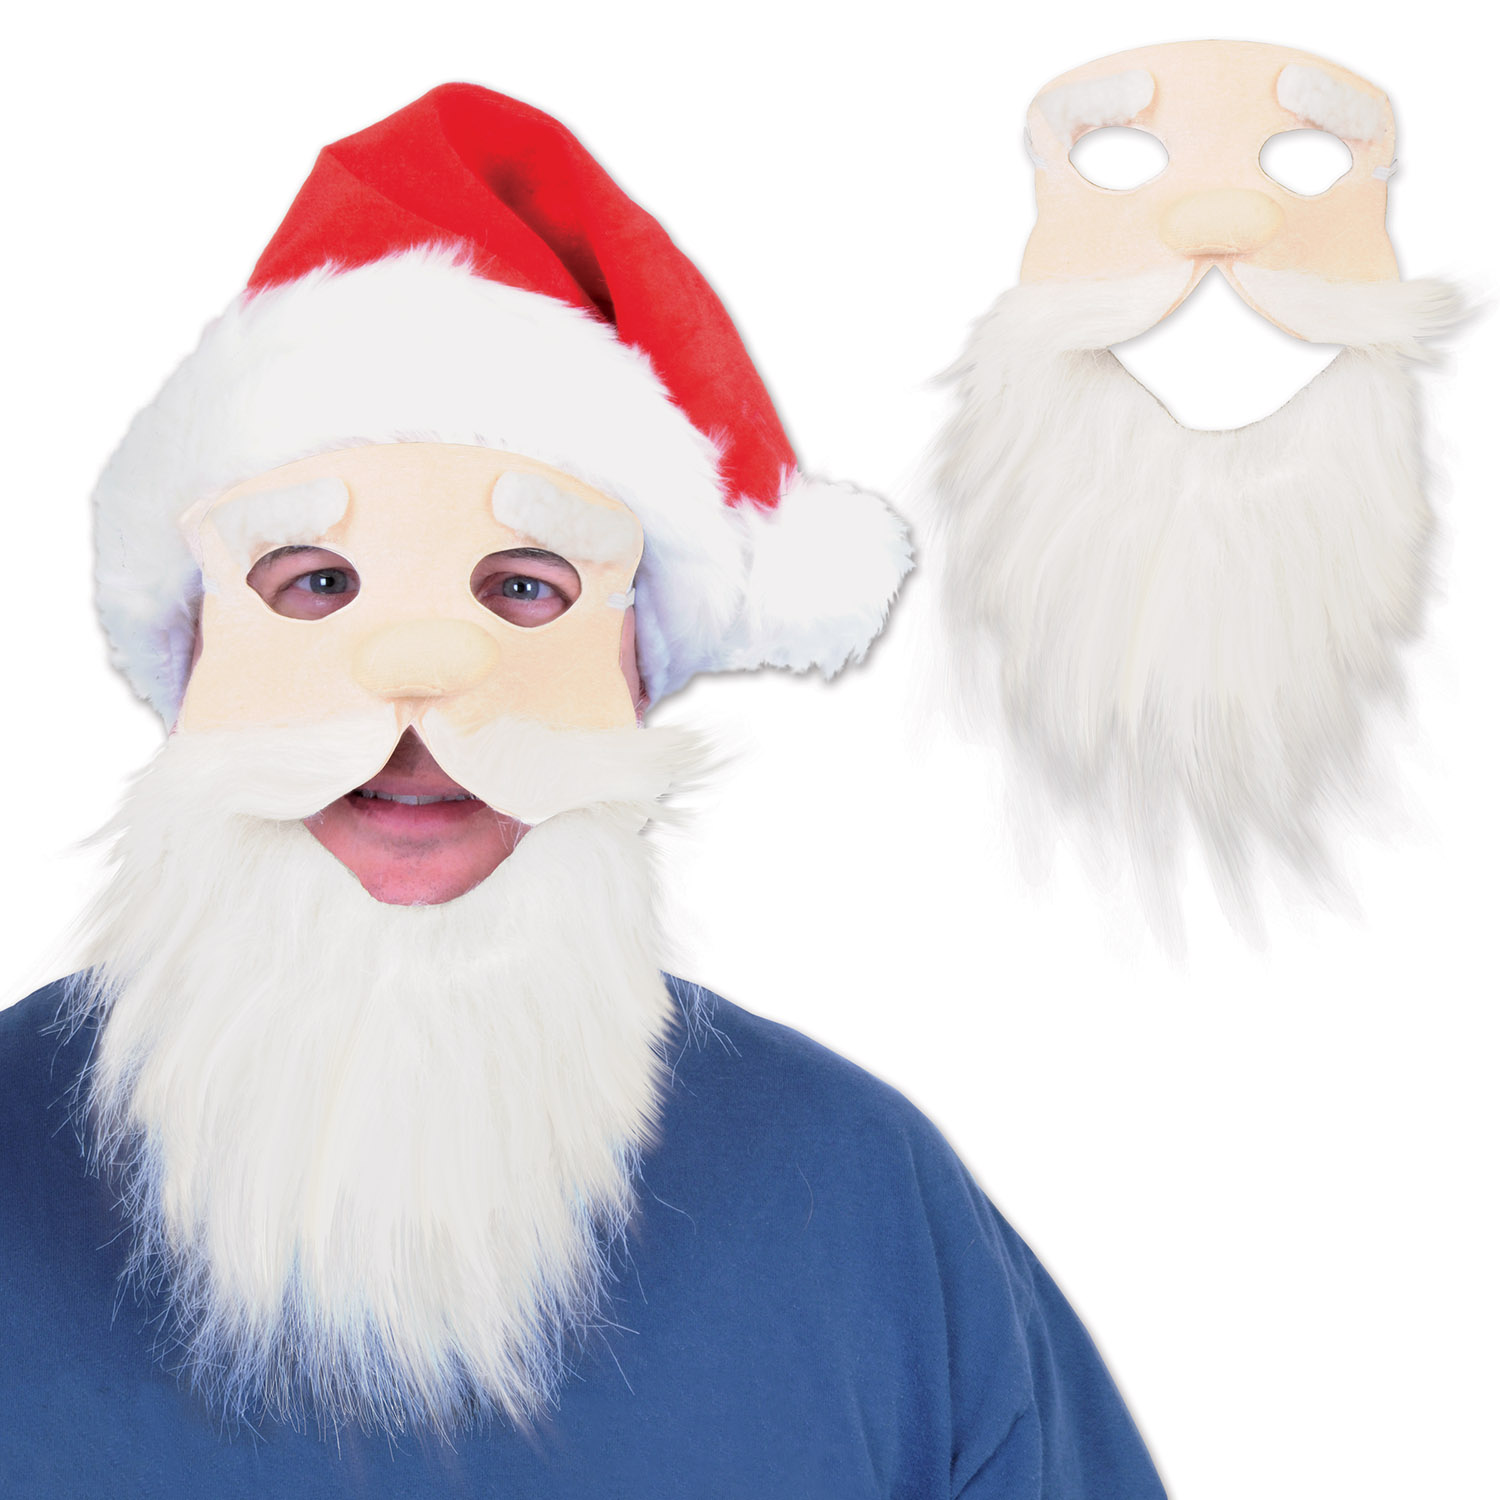 Santa Mask